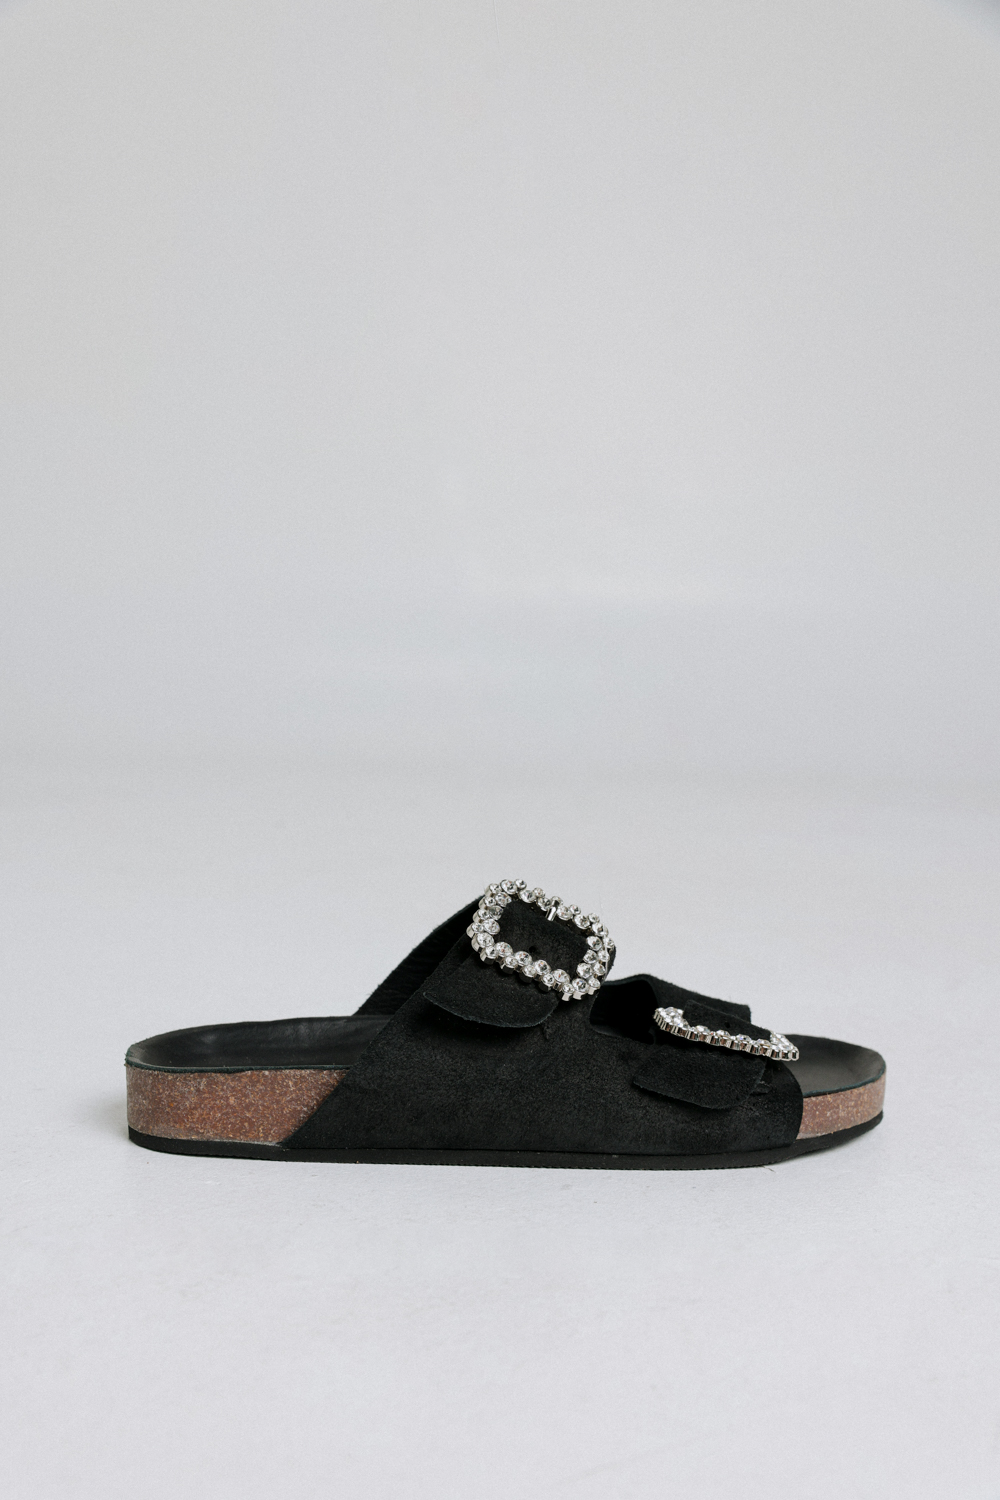 סנדלים שחורים לנשים DNA NO.1 Black Sandals